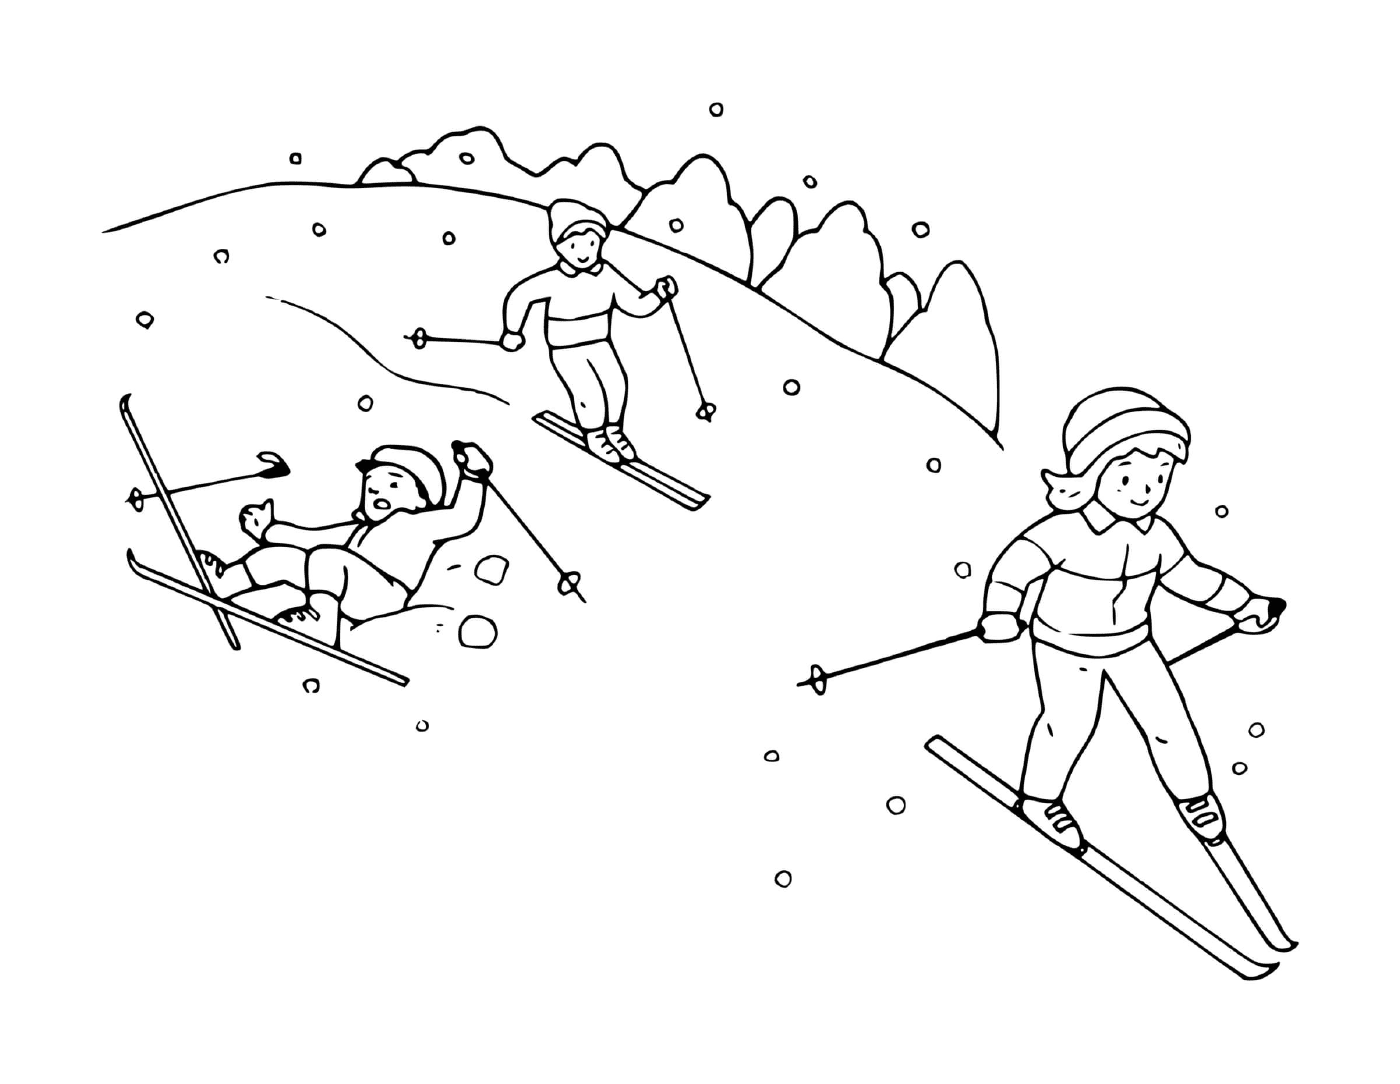  Семья весело катается на лыжах вместе 